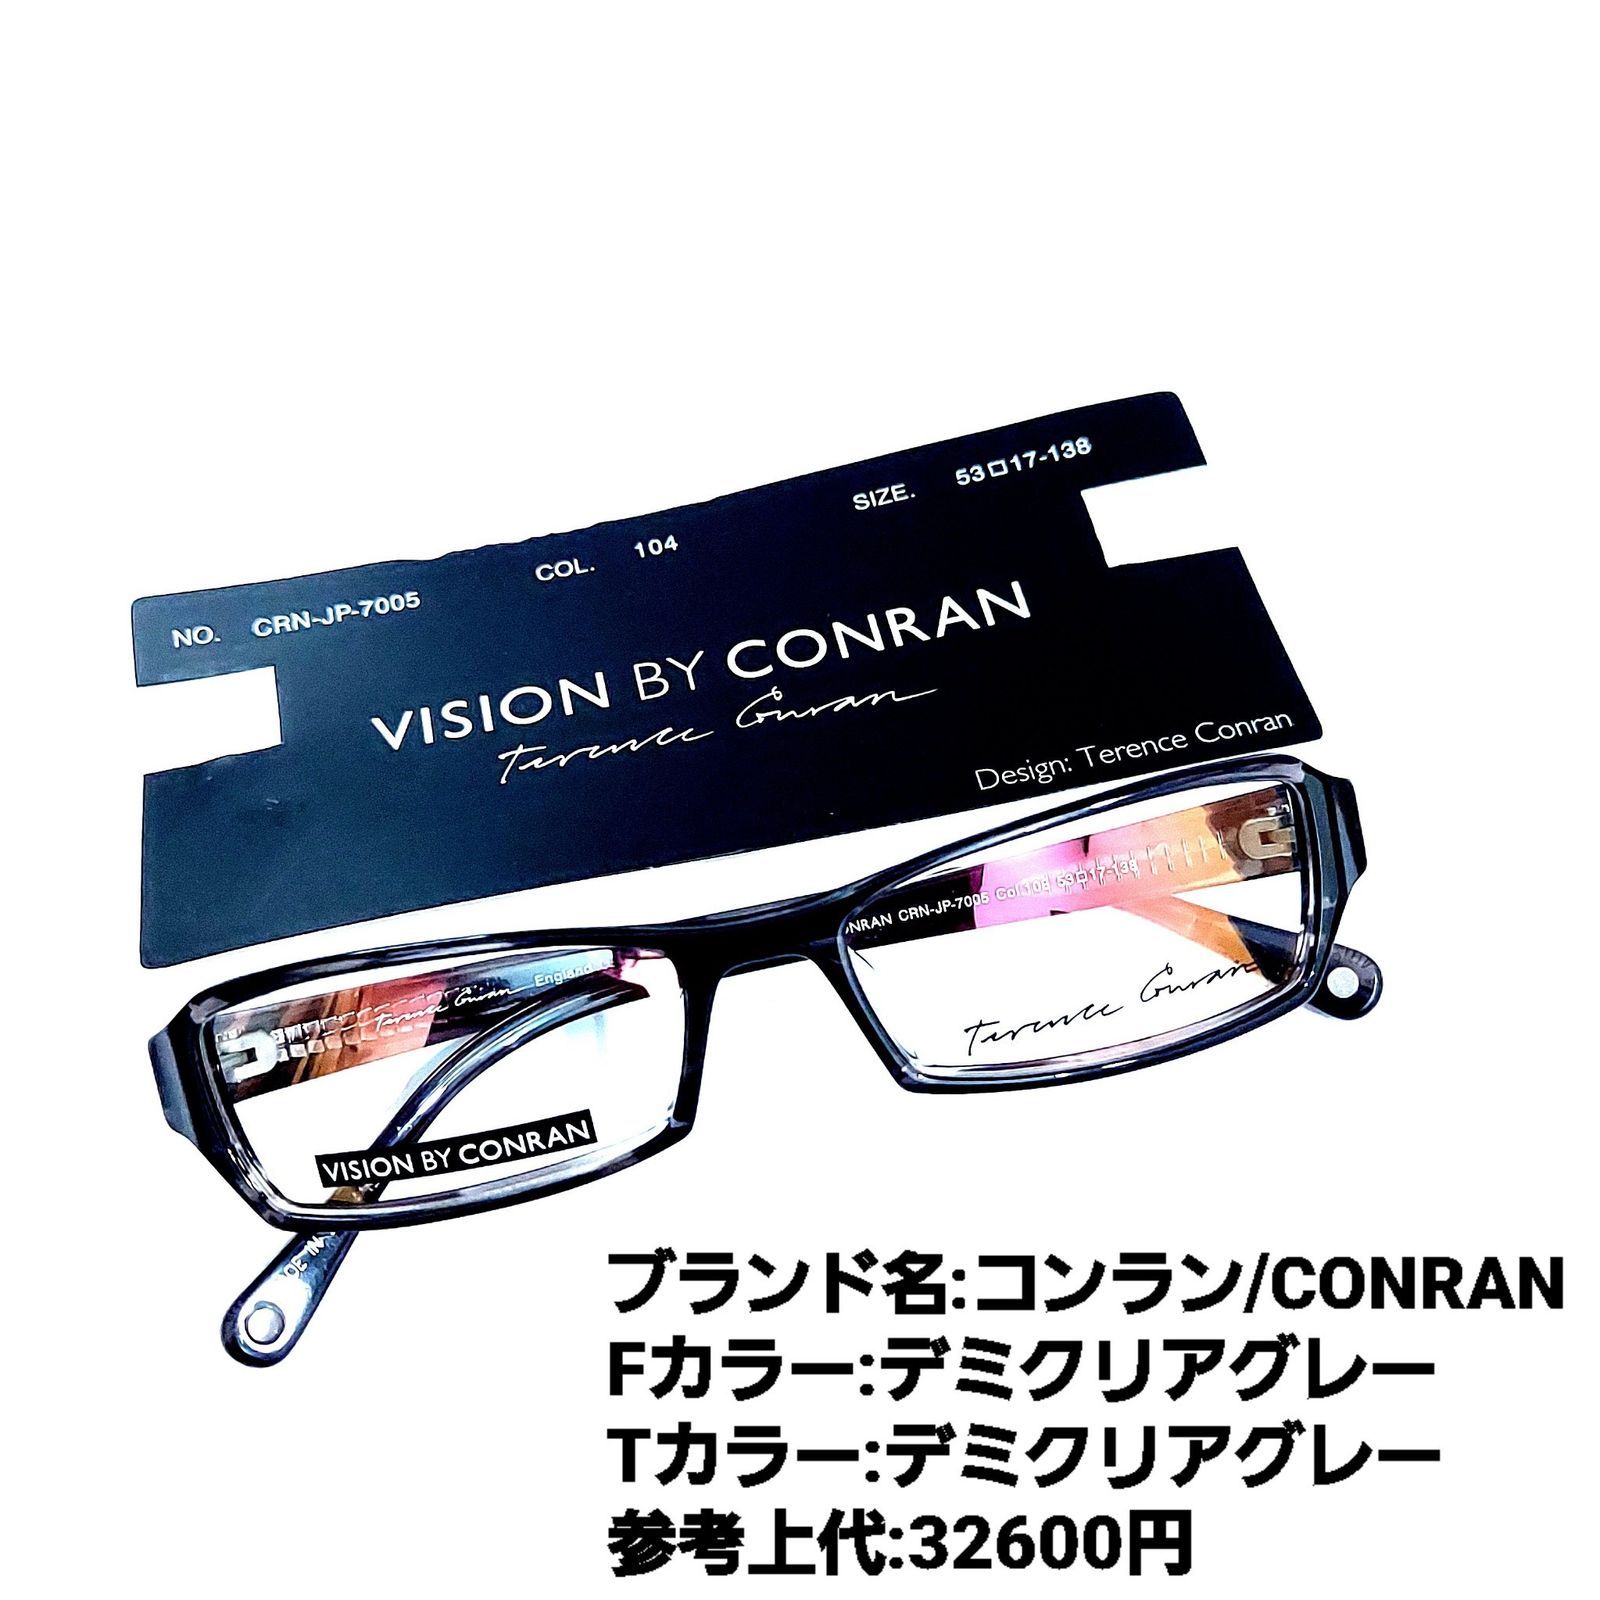 No.1728+メガネ VISION BY CONRAN【度数入り込み価格】-